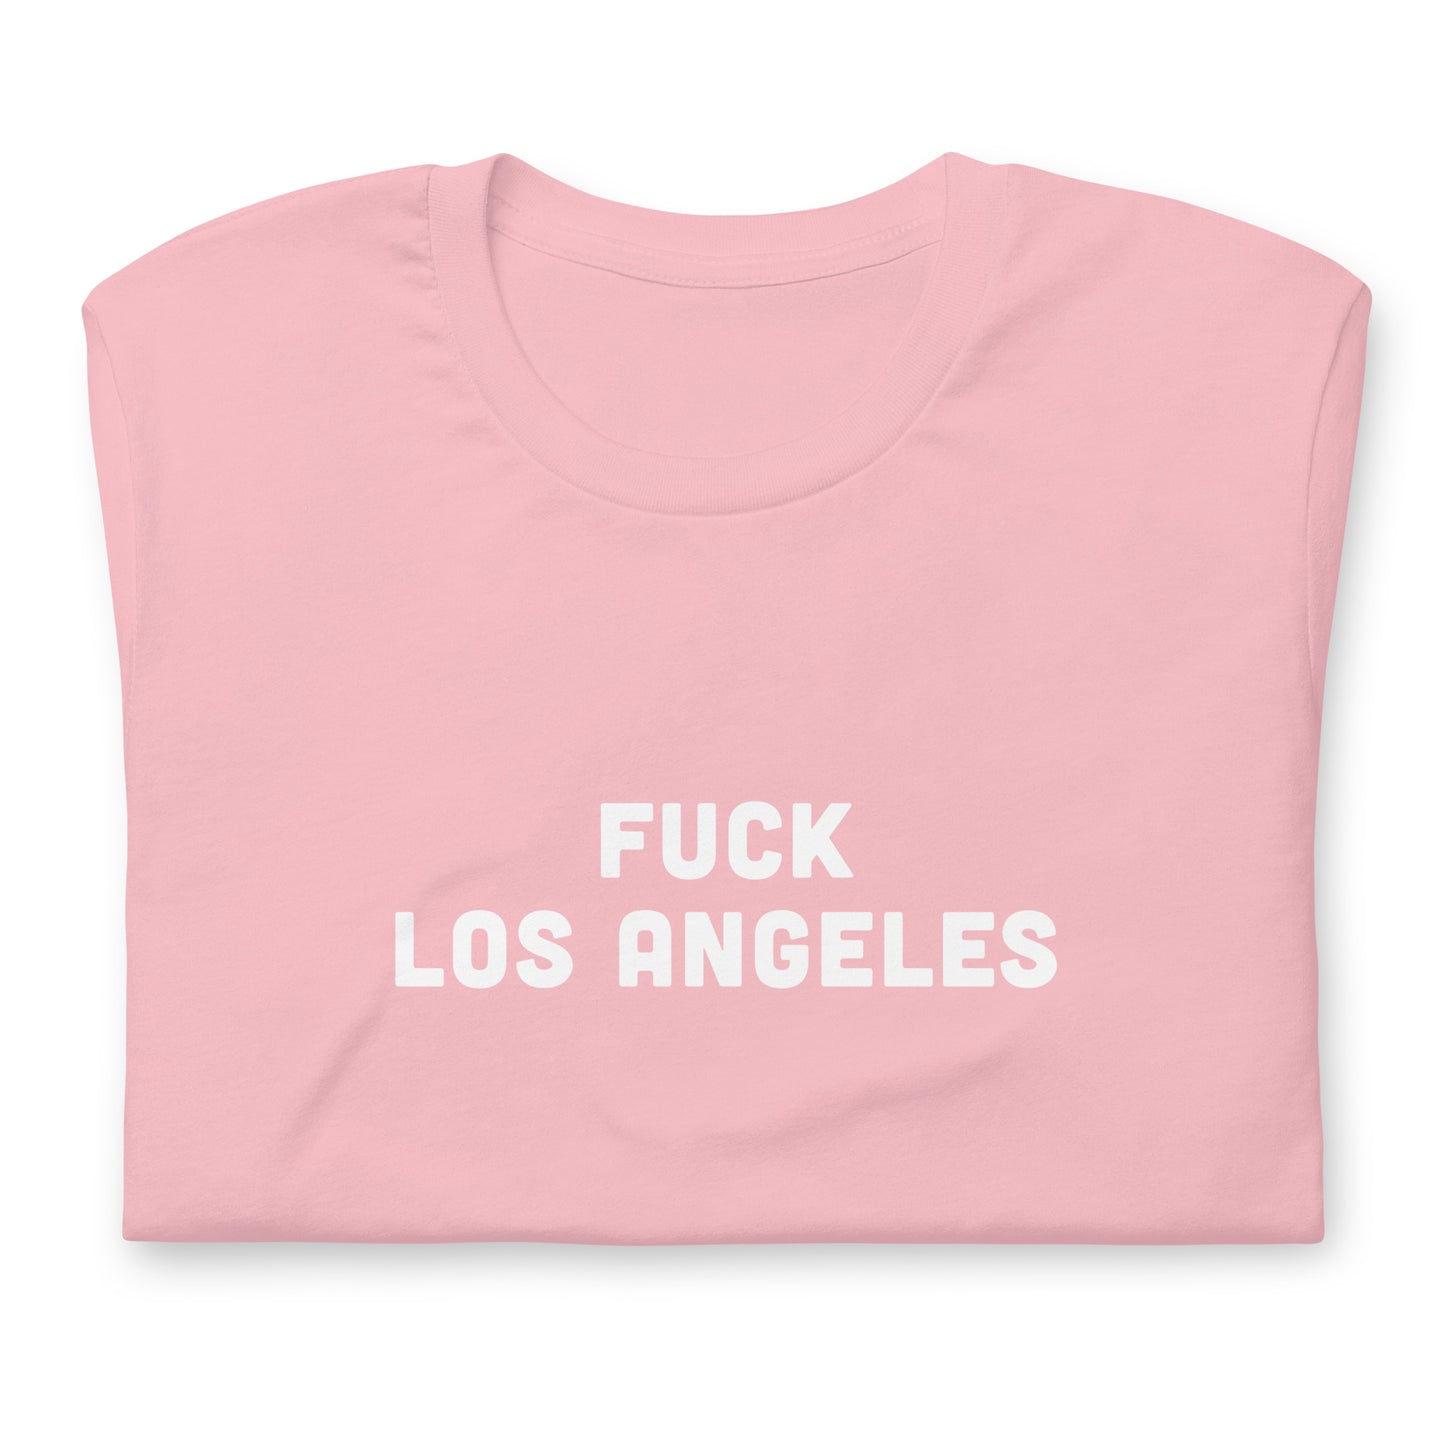 Fuck Los Angeles T-Shirt Size M Color Asphalt